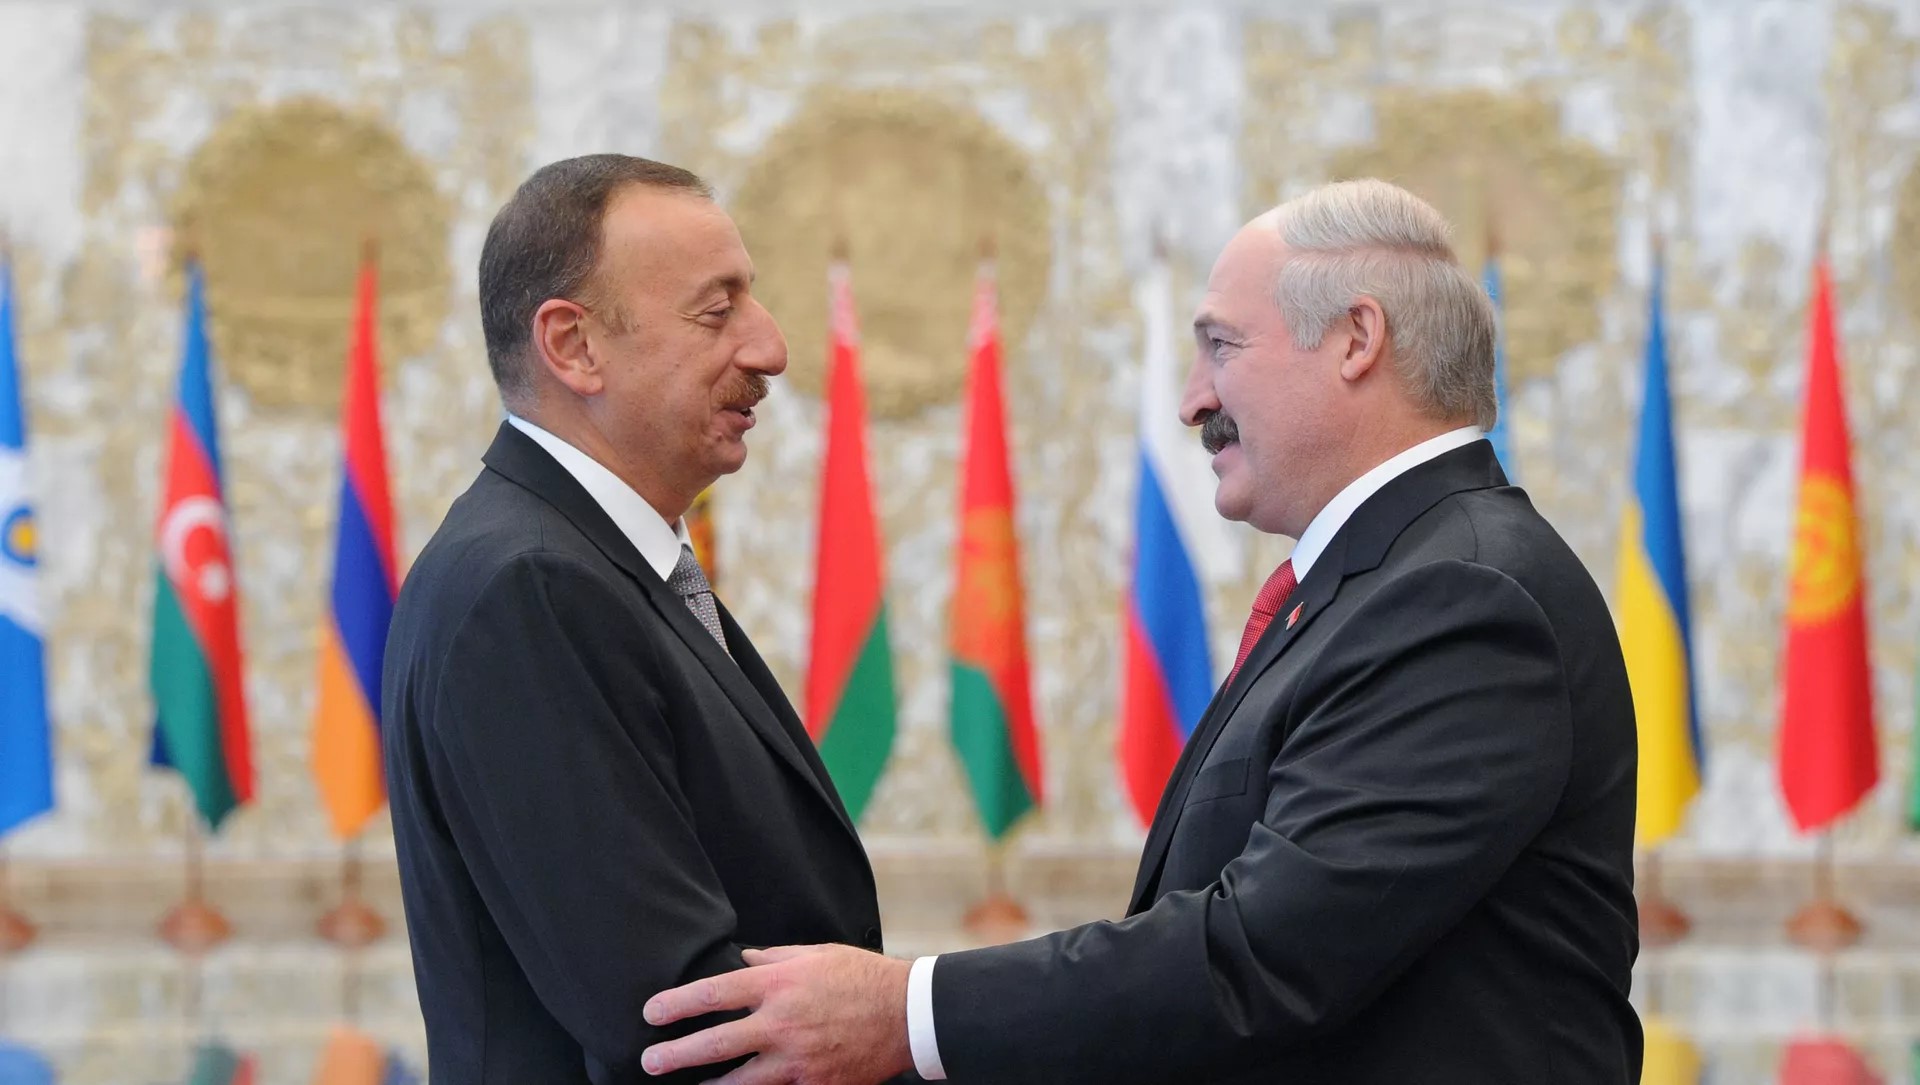 Беларусь поставляла Азербайджану оружие для войны против Армении, своего союзника по ОДКБ — Politico